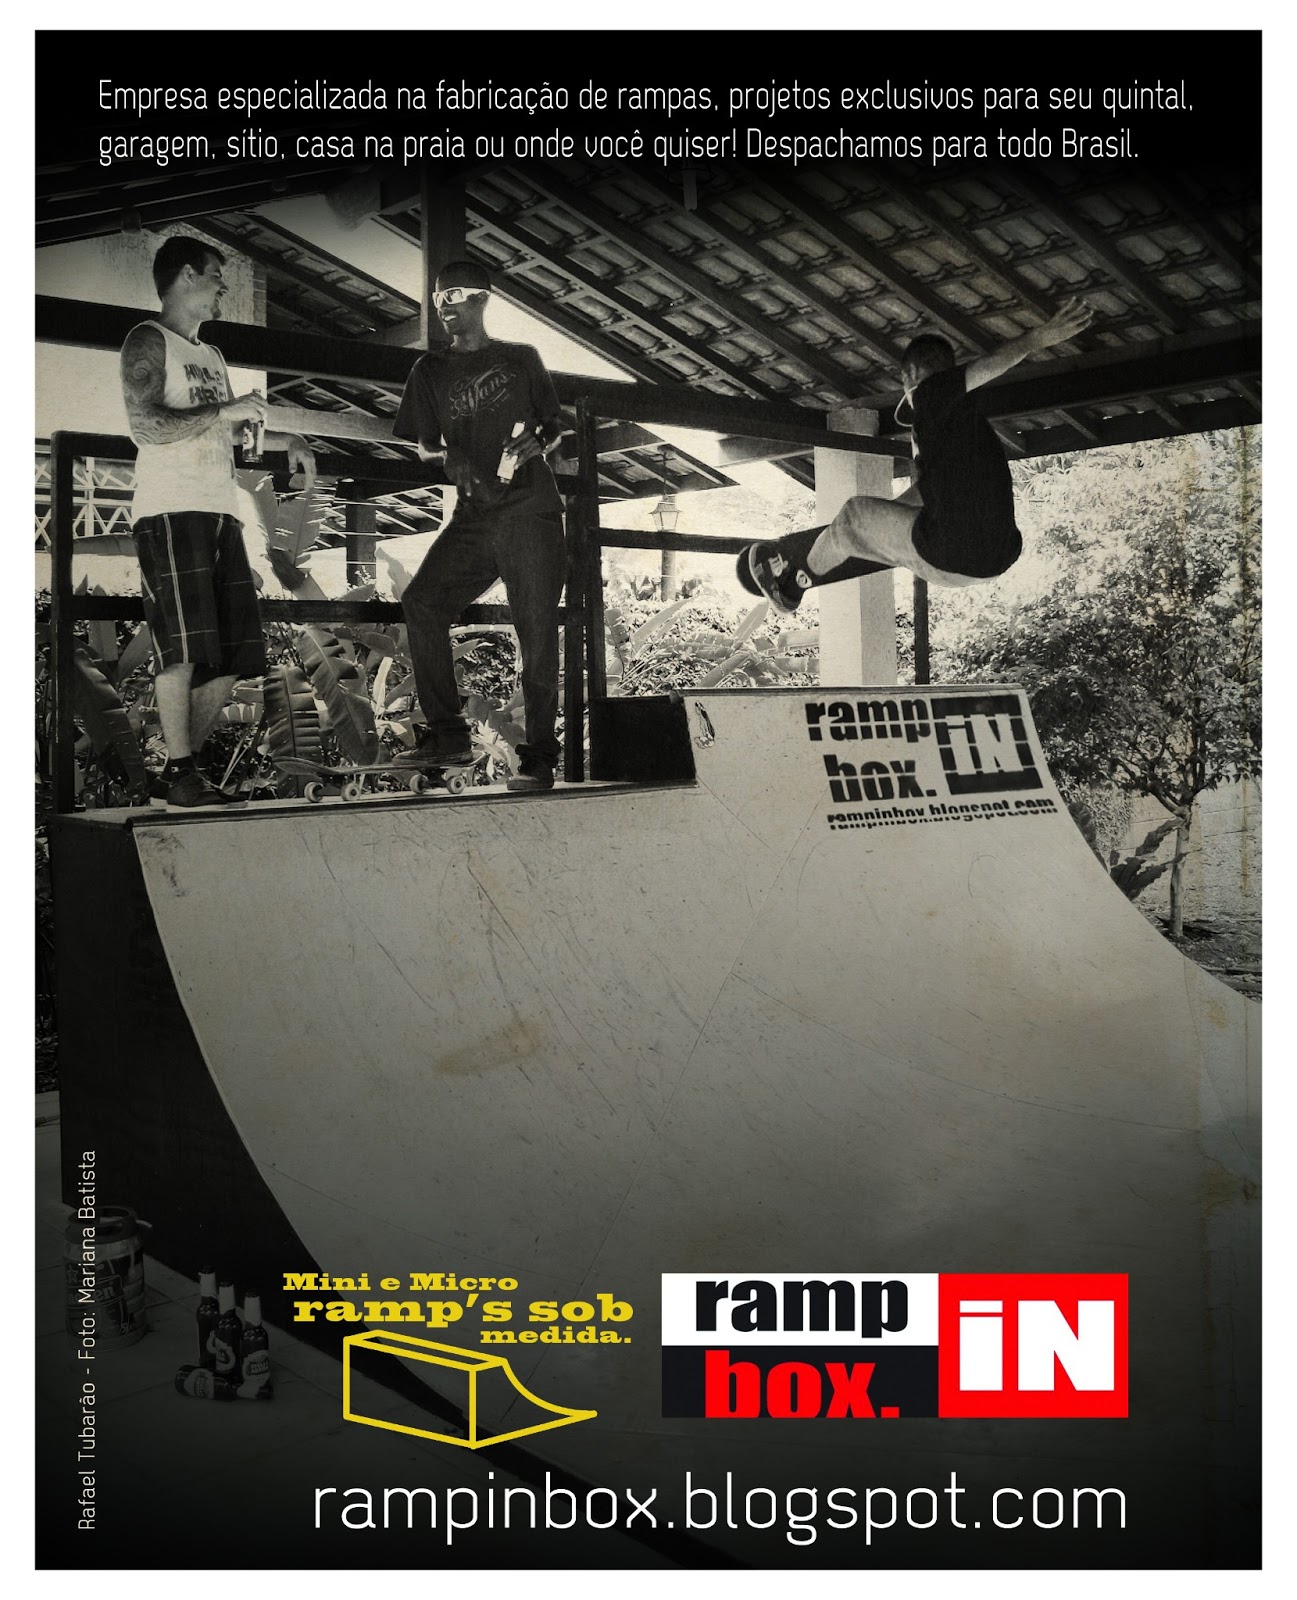 Campanha R.I.B. Jan. 2013 - Revista Tribo Skate - Edição 207